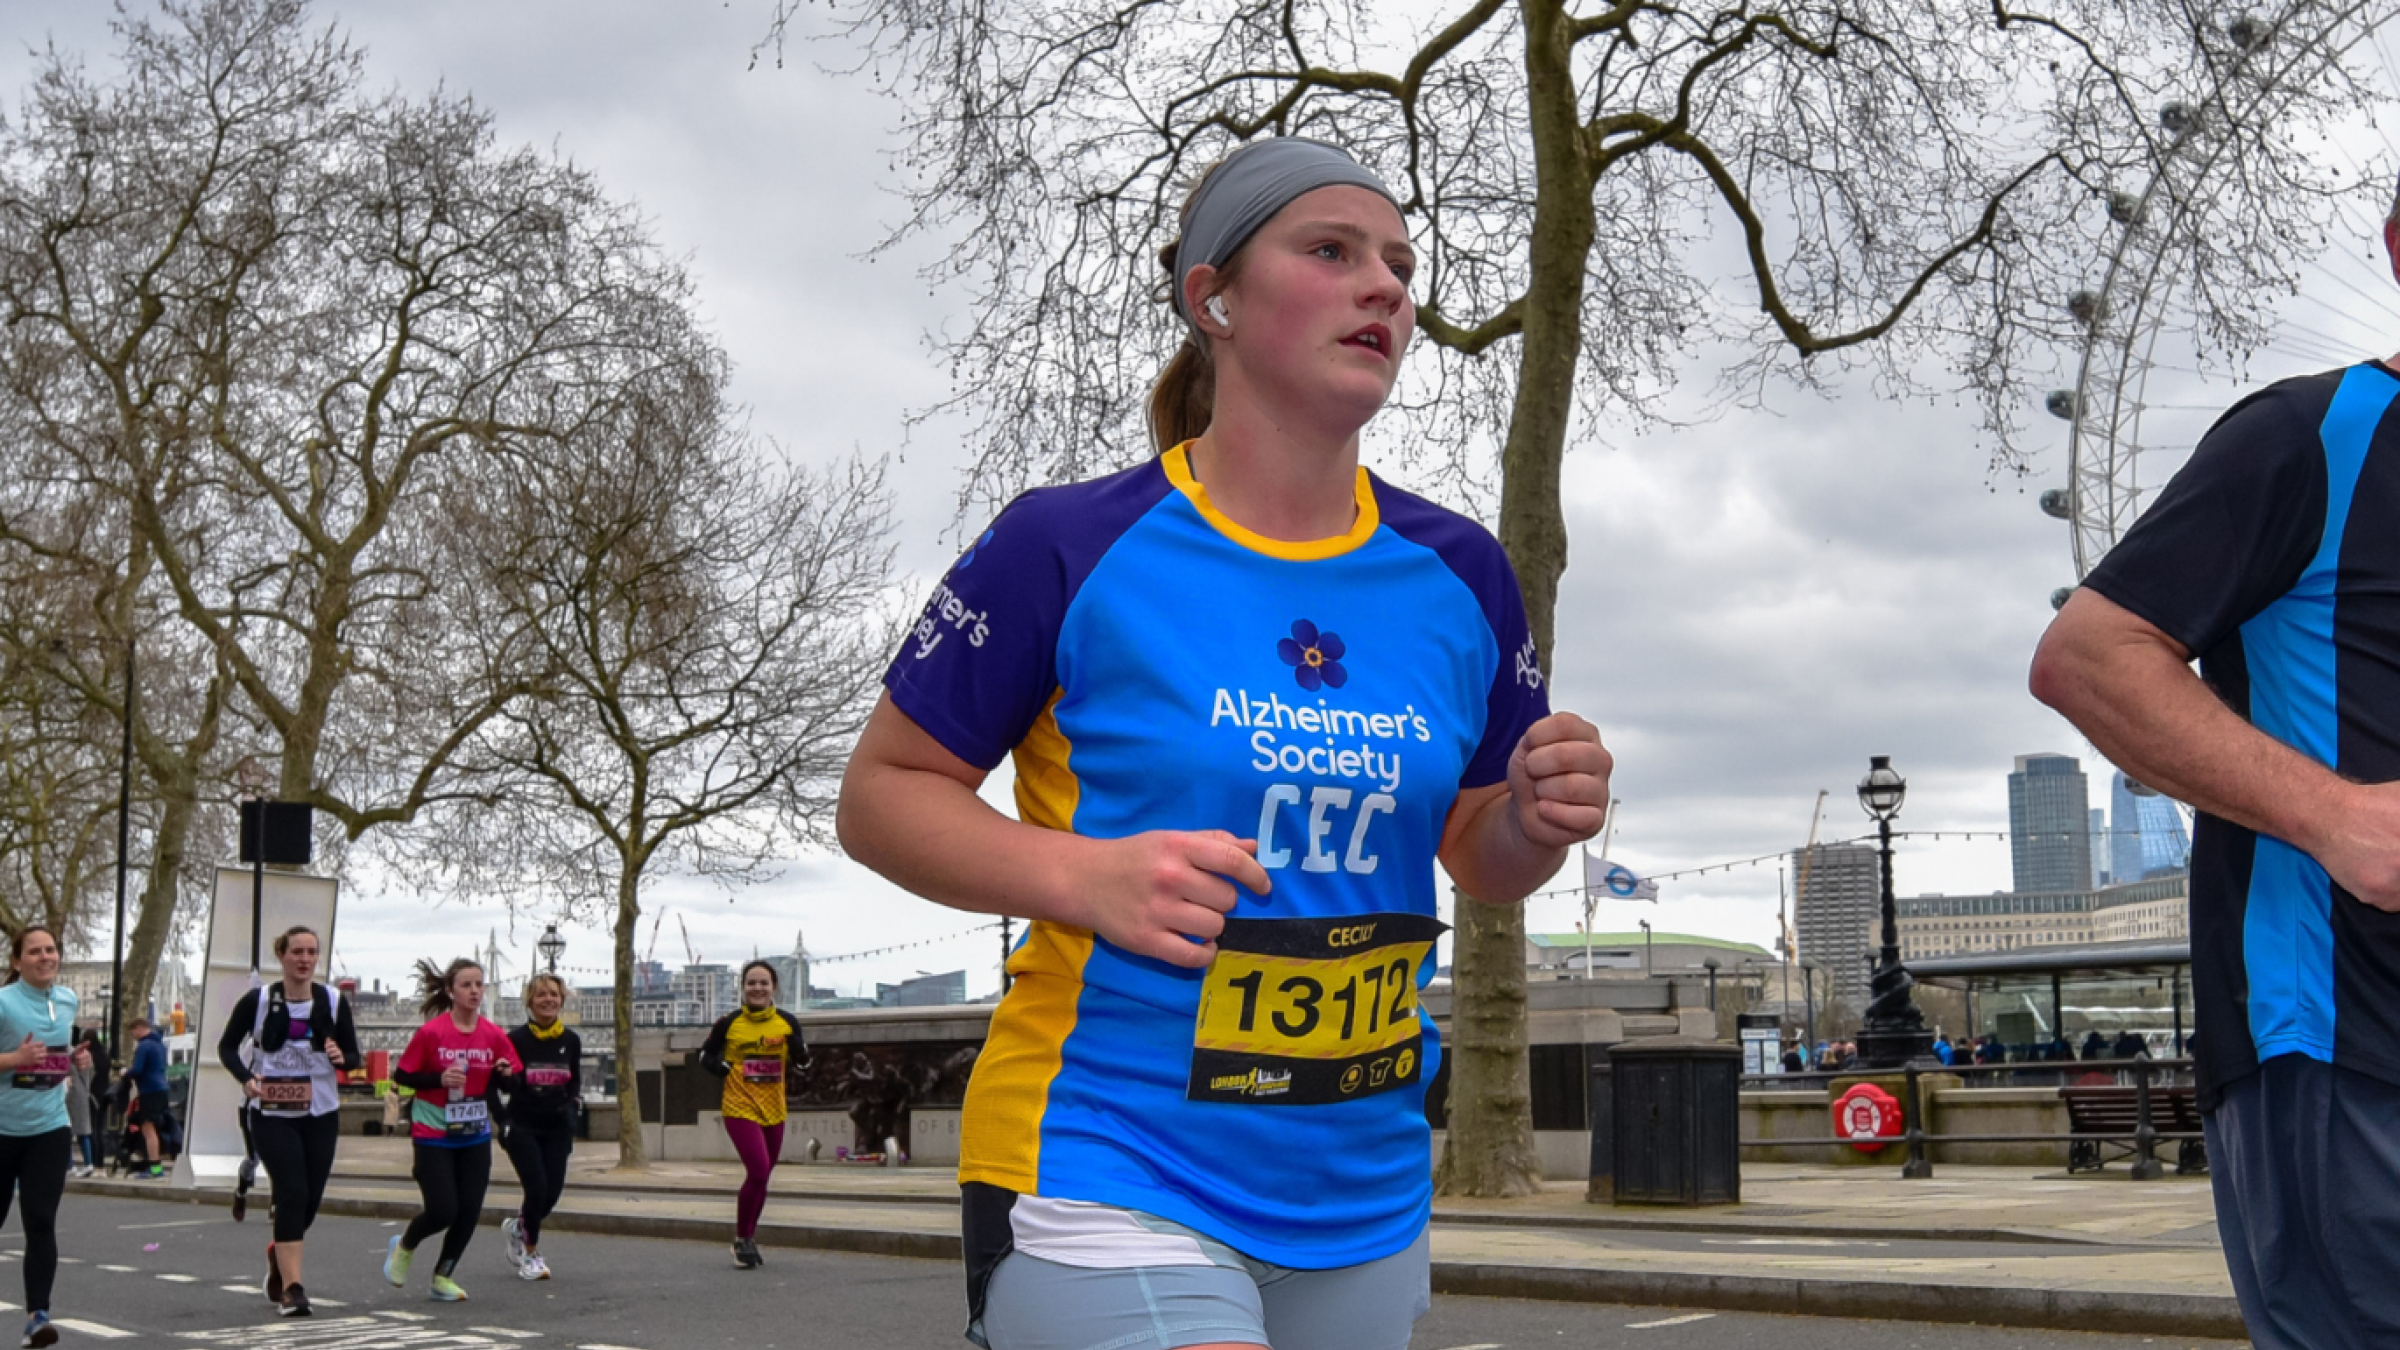 Alzheimer's Society runner passes the London Eye